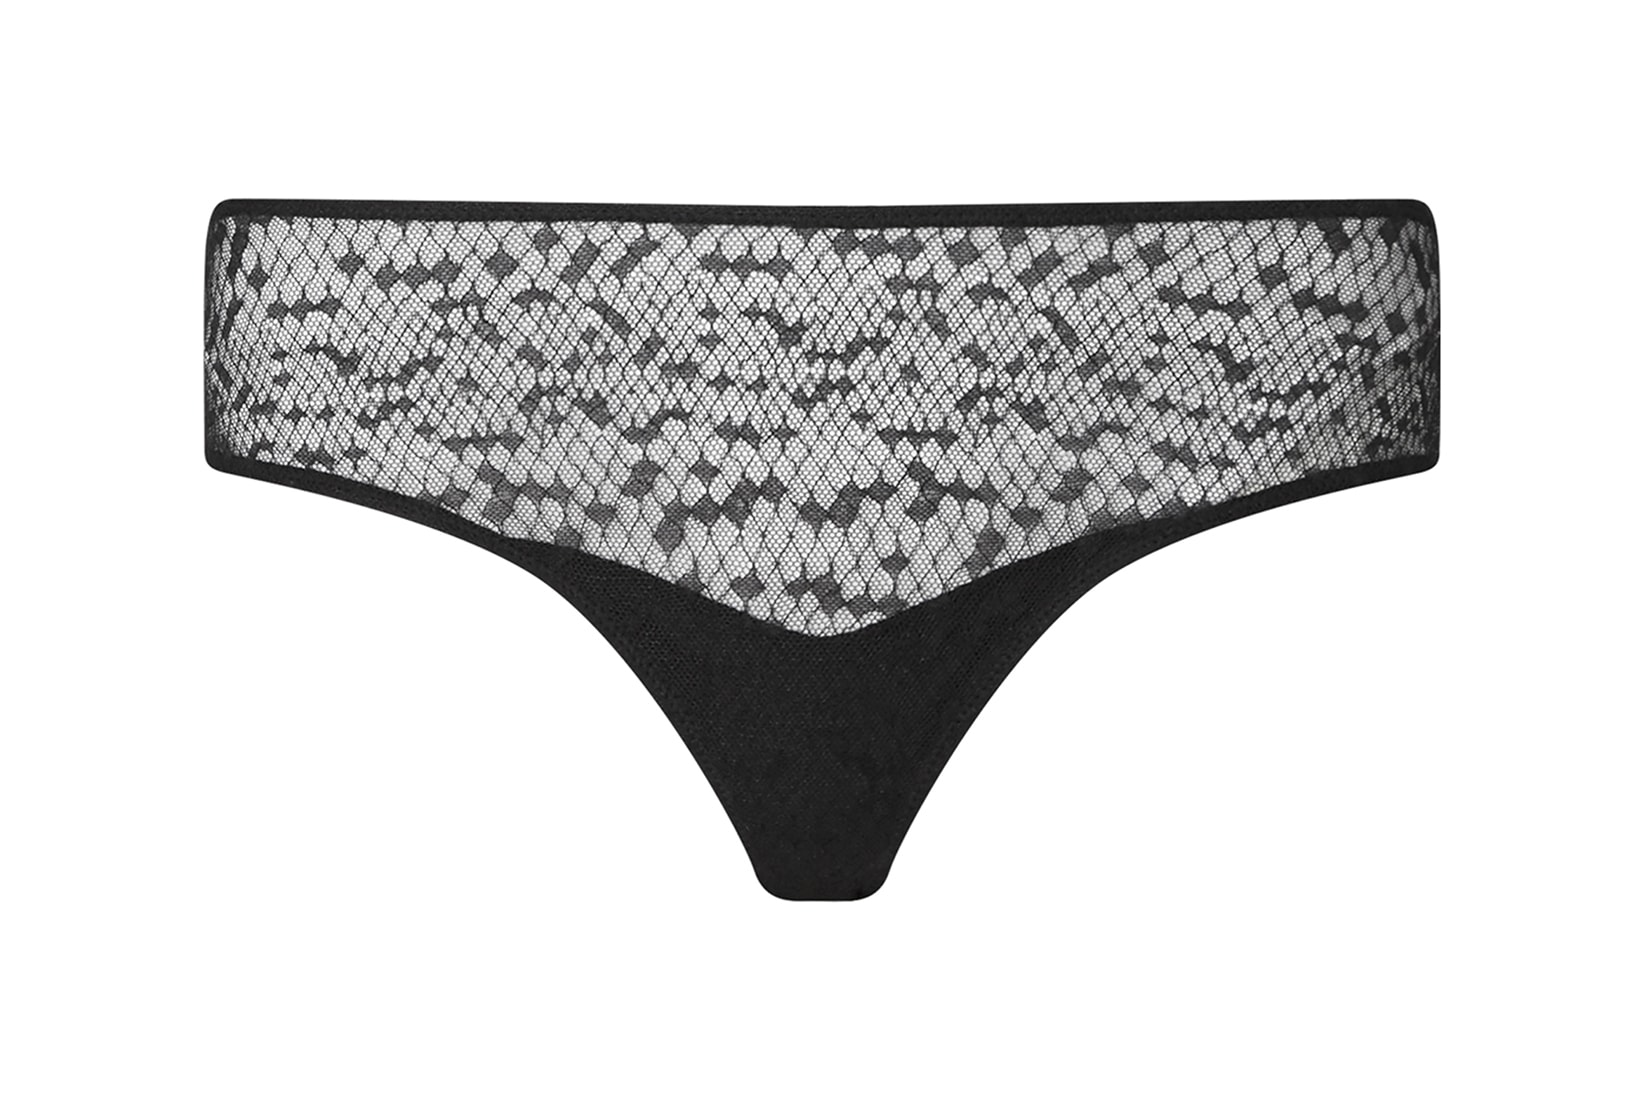 Les Girls Les Boys Lace Lingerie Bra Underwear Black Khaki